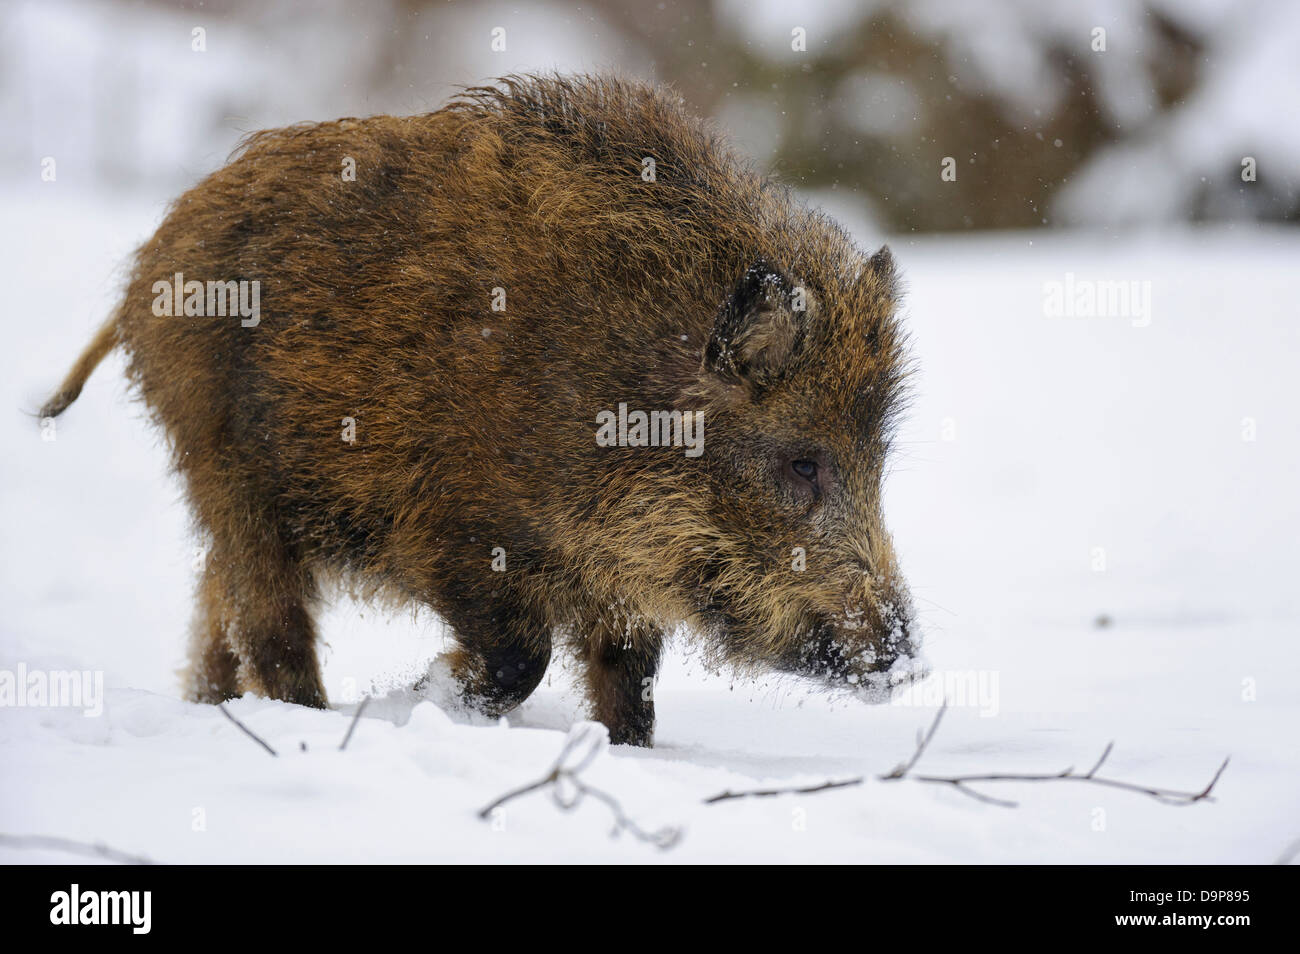 Wild boar, Sus scrofa, Wildschwein, Piglet, Piglets, Frischling, Frischlinge Stock Photo